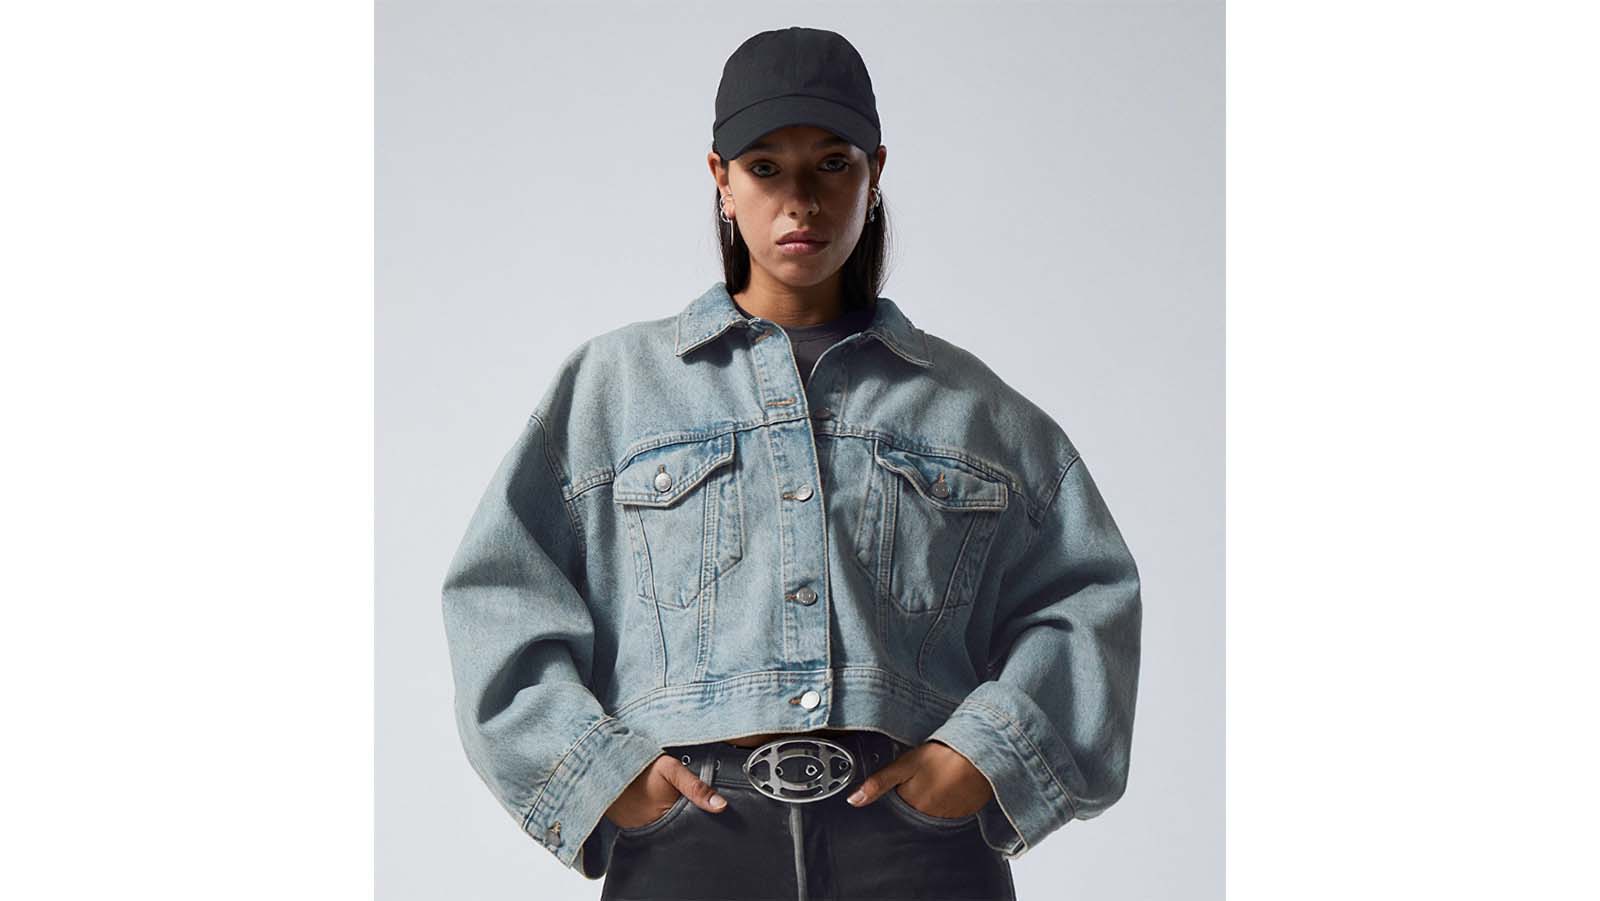 20 best jean jackets for the ultimate denim wardrobe | CNN Underscored